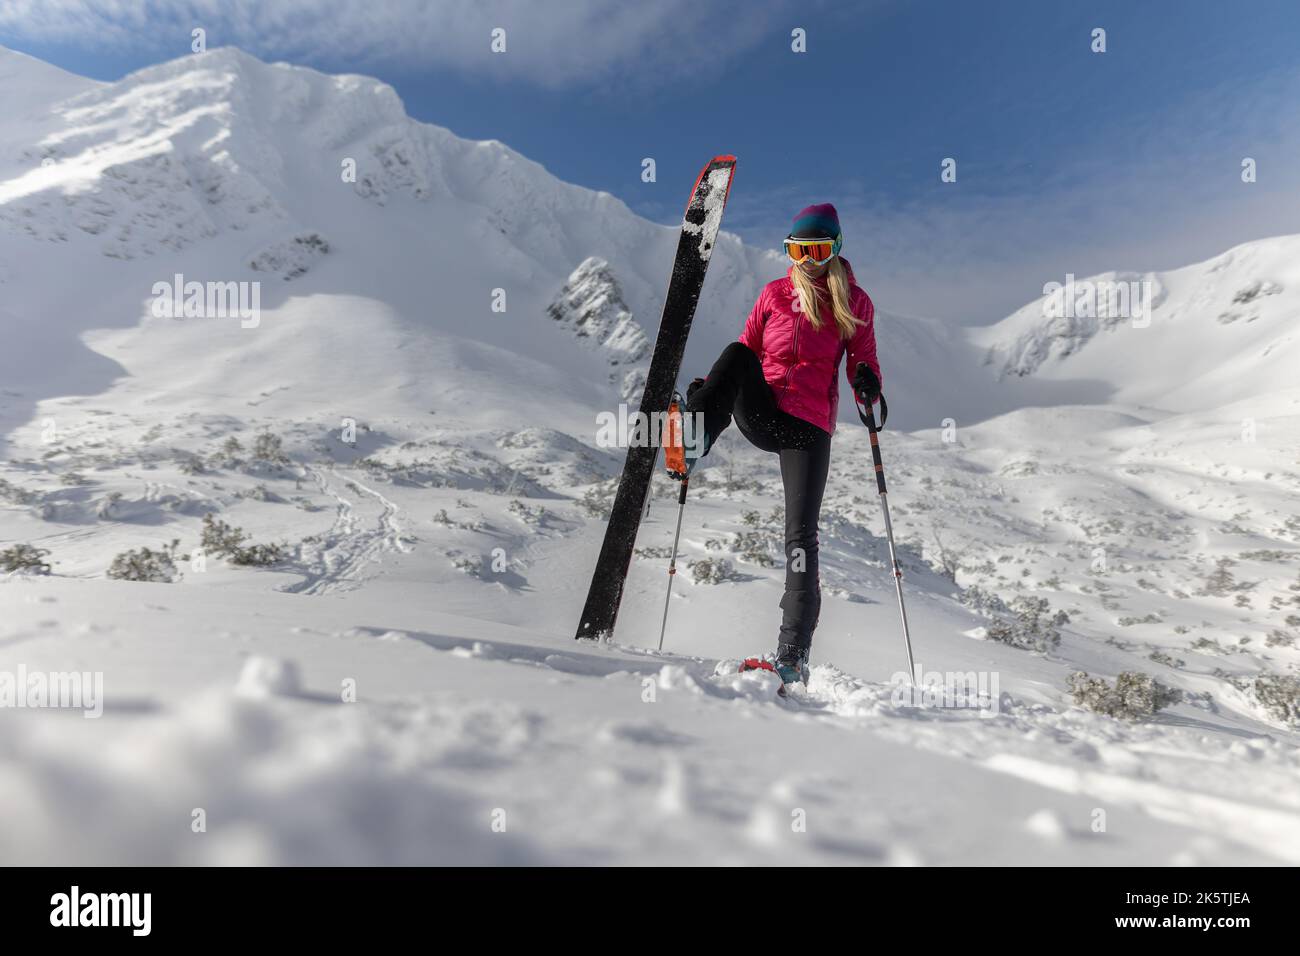 Sciatore di backcountry femminile che si sta camminando fino alla cima di una cima nevosa nei bassi Tatra in Slovacchia, guardando la macchina fotografica. Foto Stock